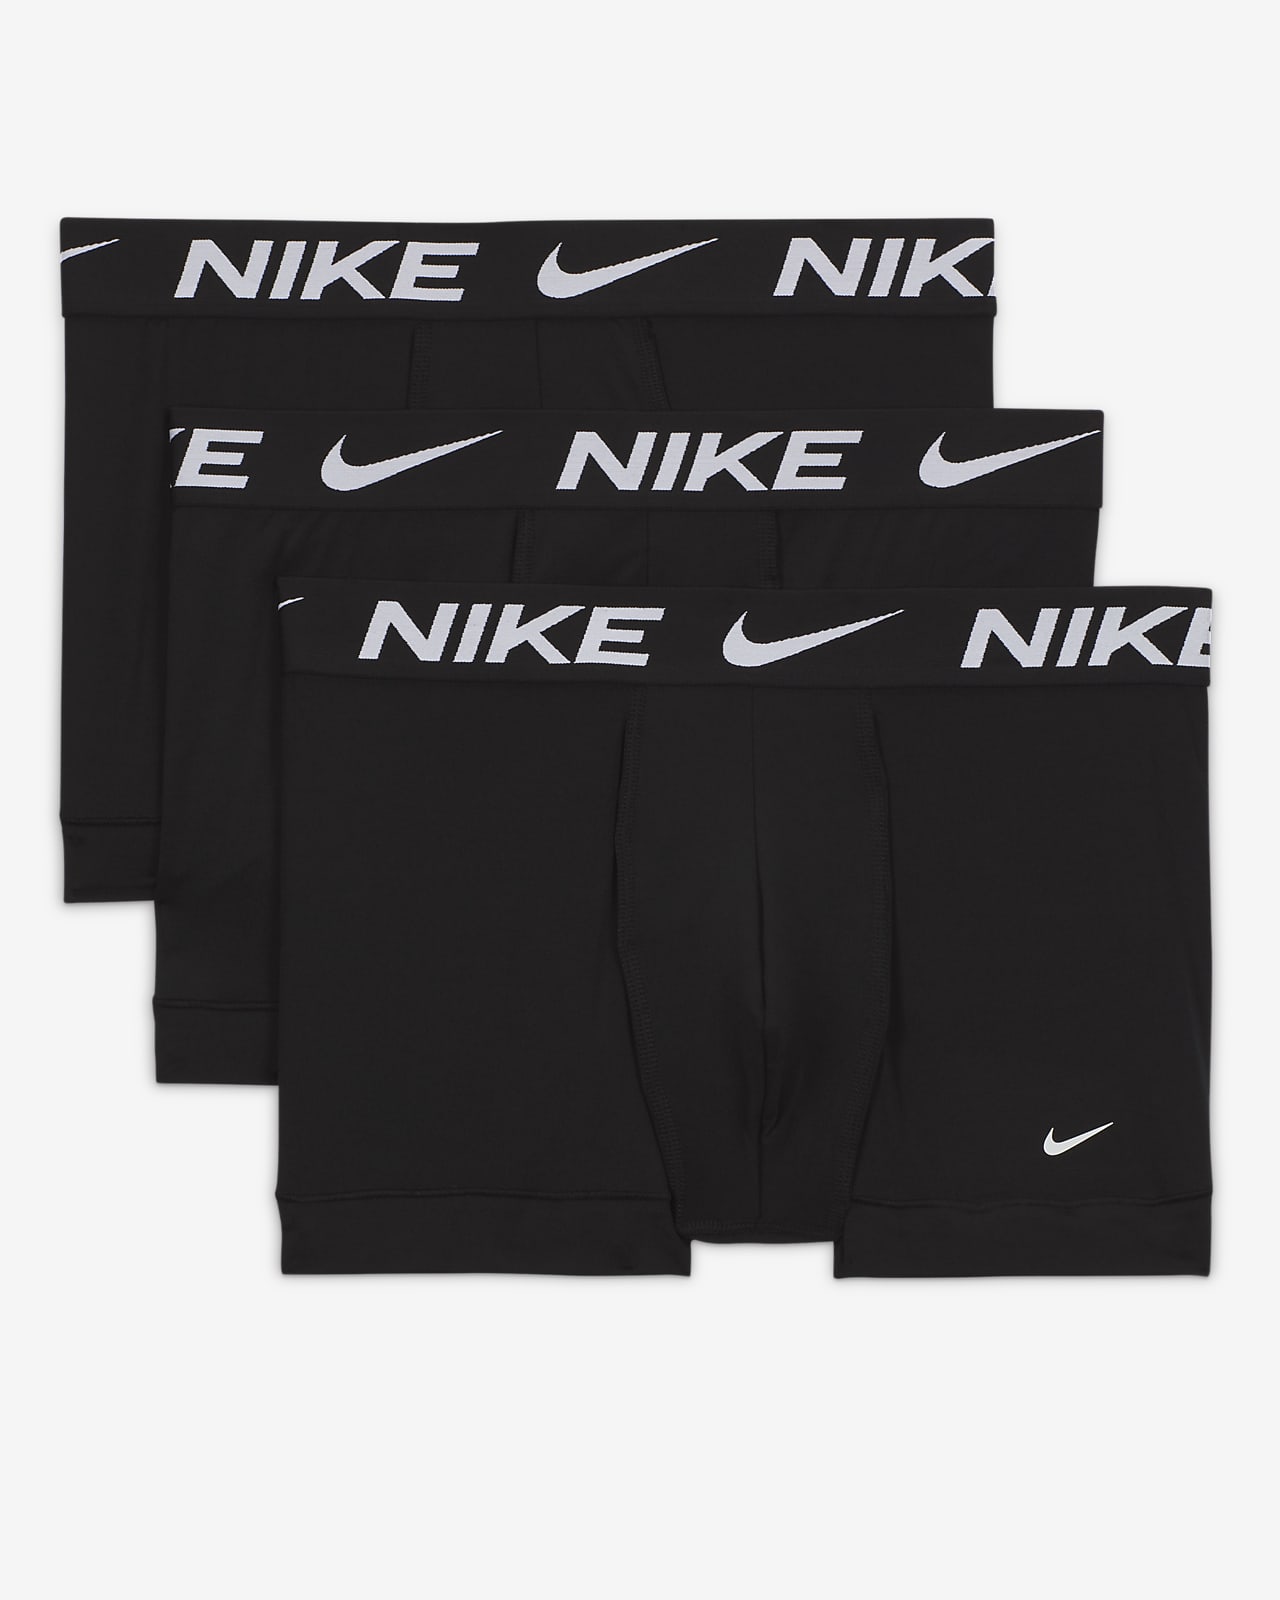 Nike Dri-Fit Essential Micro Trunk 3 Pack Men's Underwear KE1156 Camo Black  Red